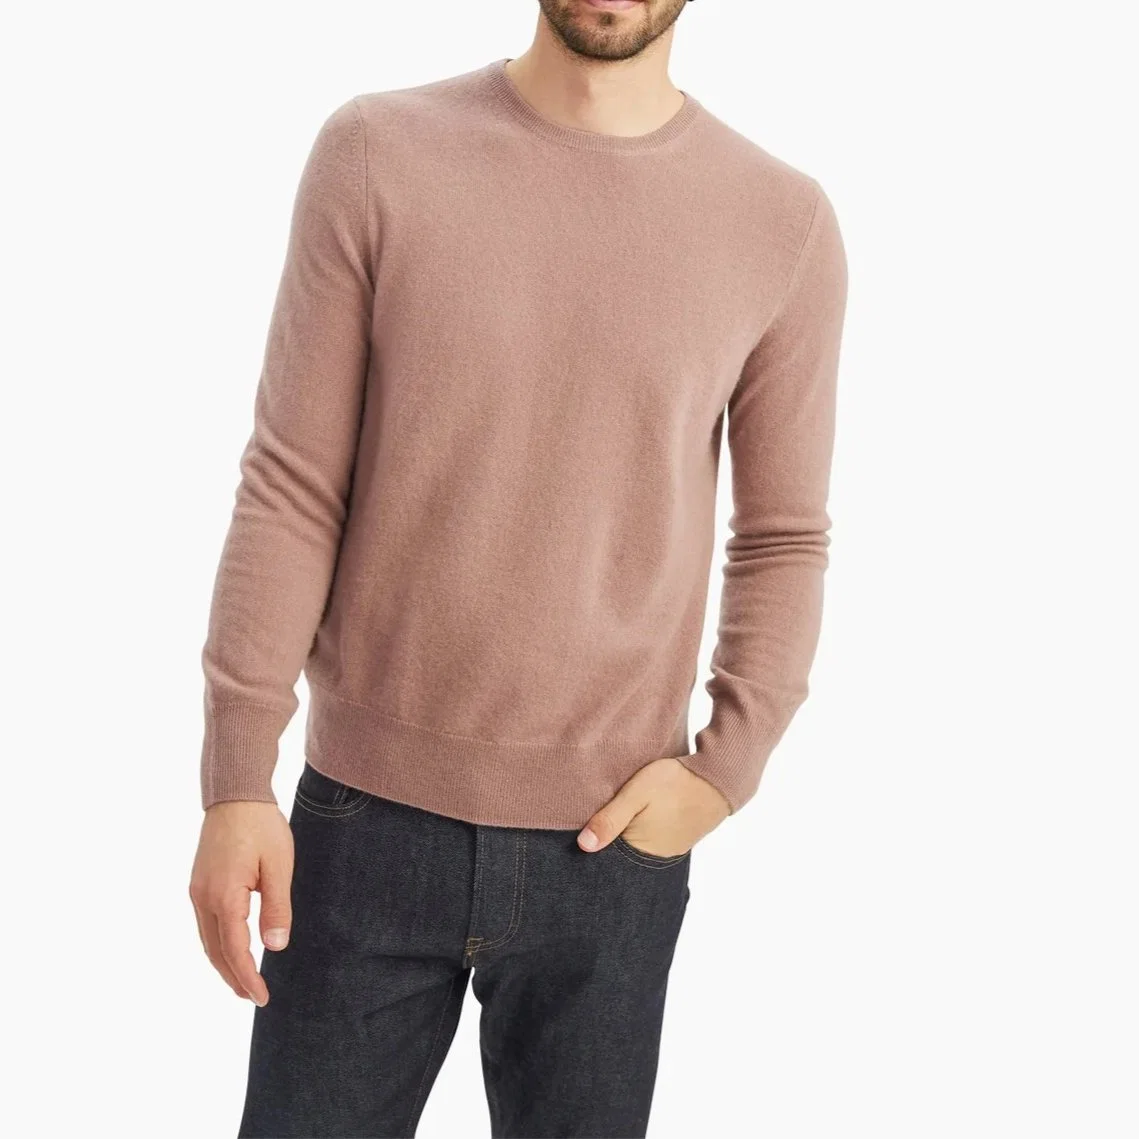 Original Kaschmir Strickpullover Pullover Pullover Bekleidung T-Shirt